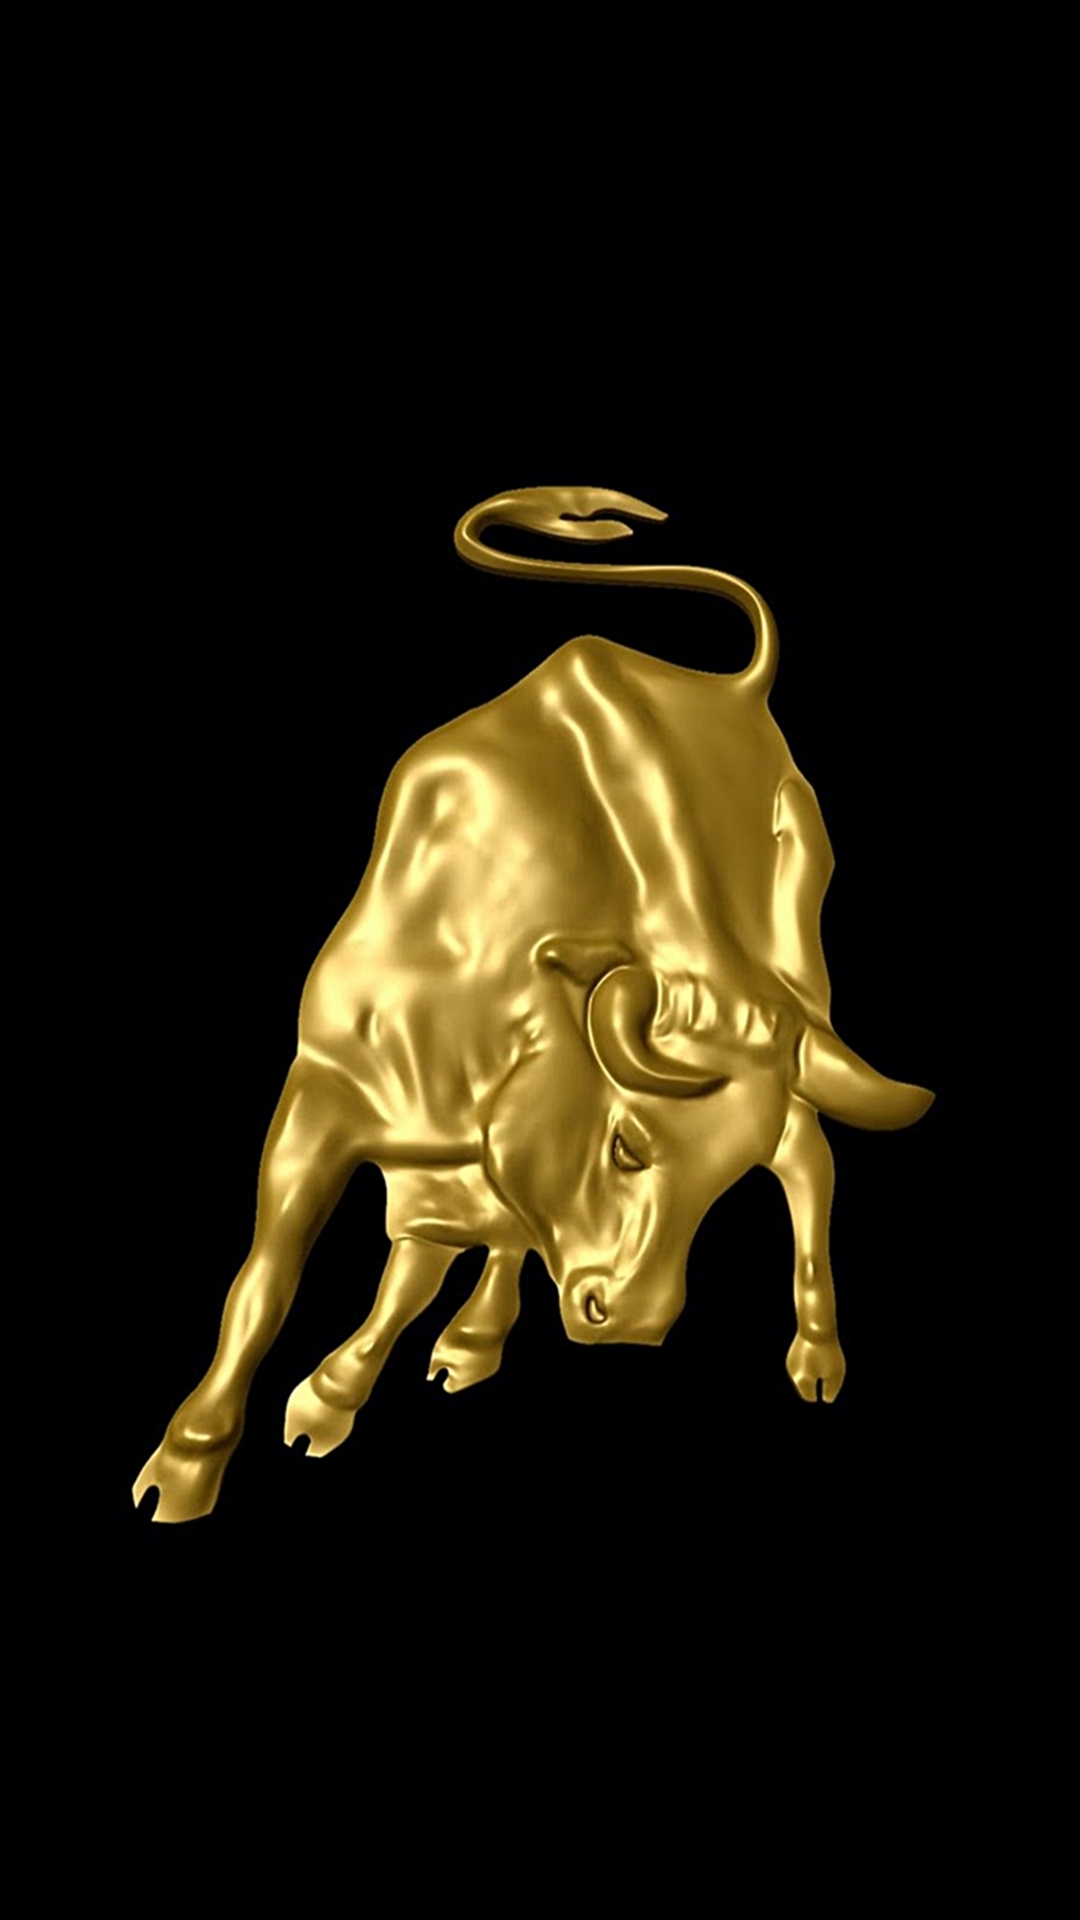 Gold forex logo